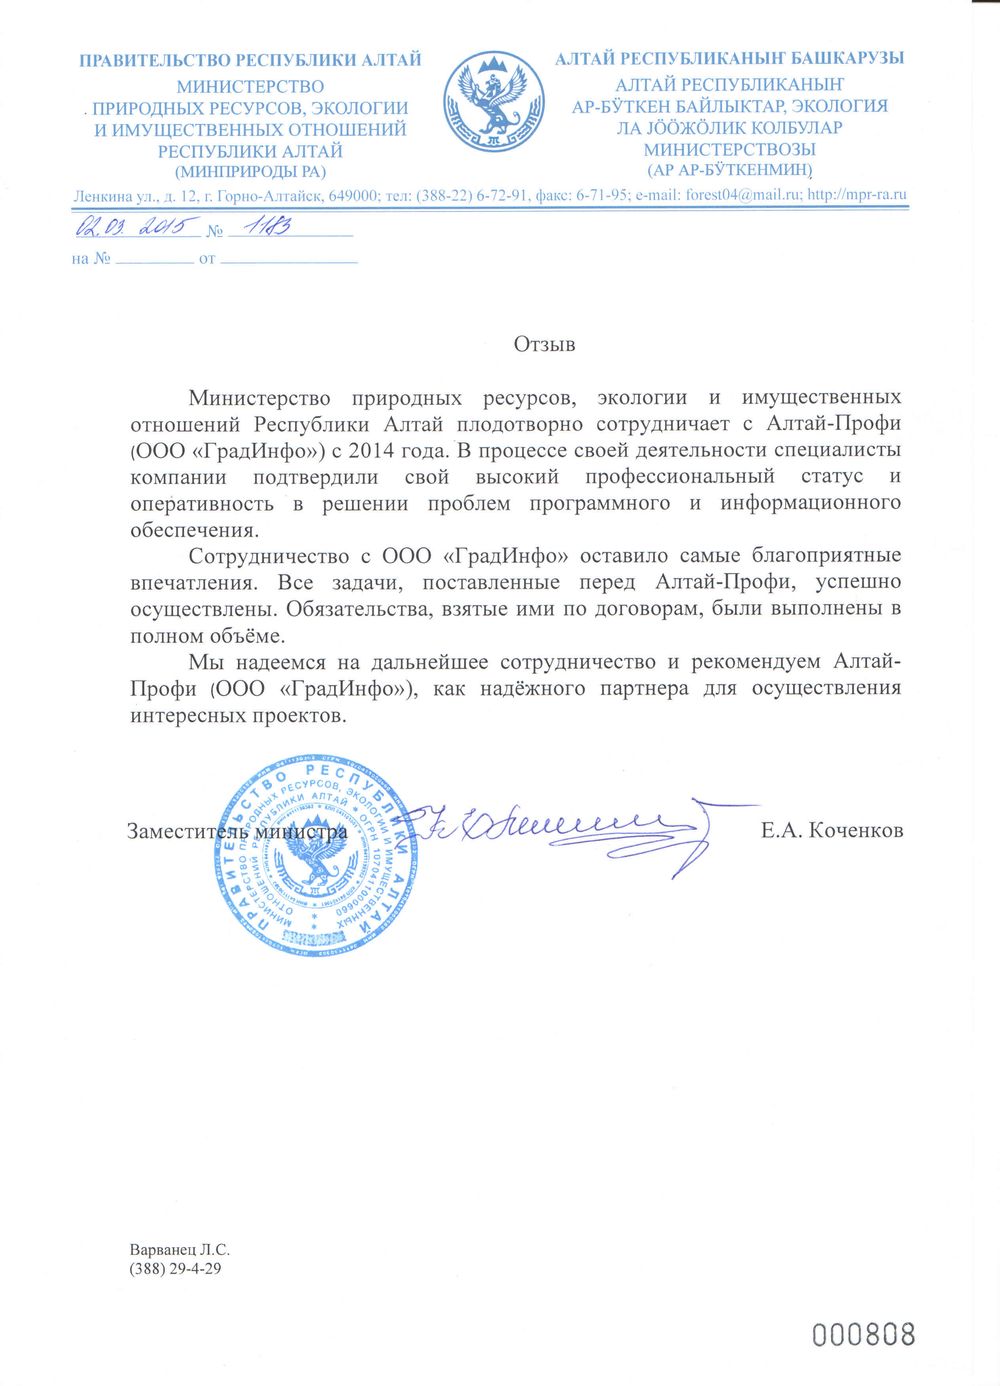 Отзыв от Министерства Природных ресурсов Республики Алтай